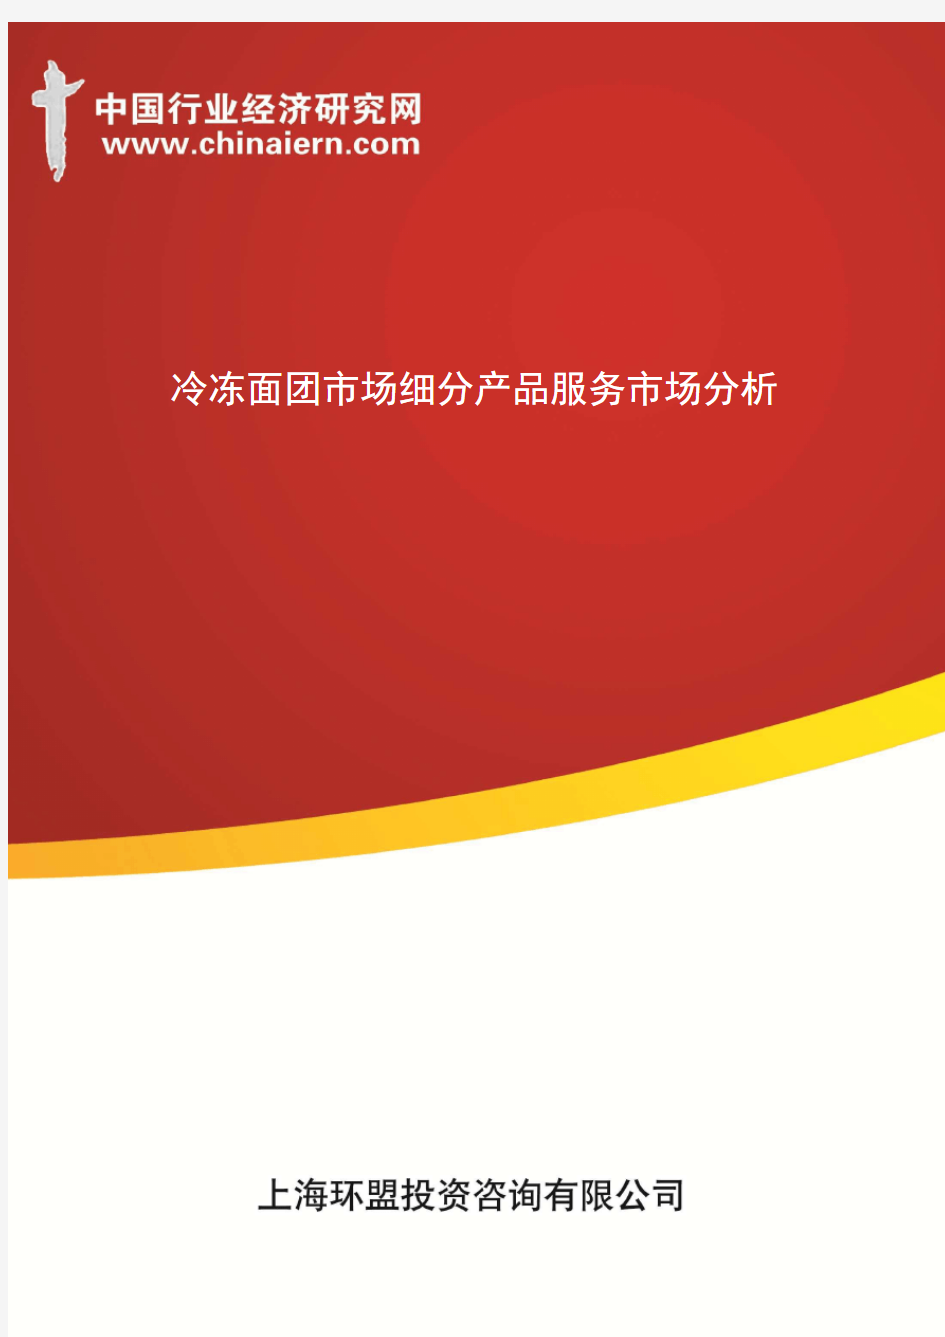 冷冻面团市场细分产品服务市场分析(上海环盟)